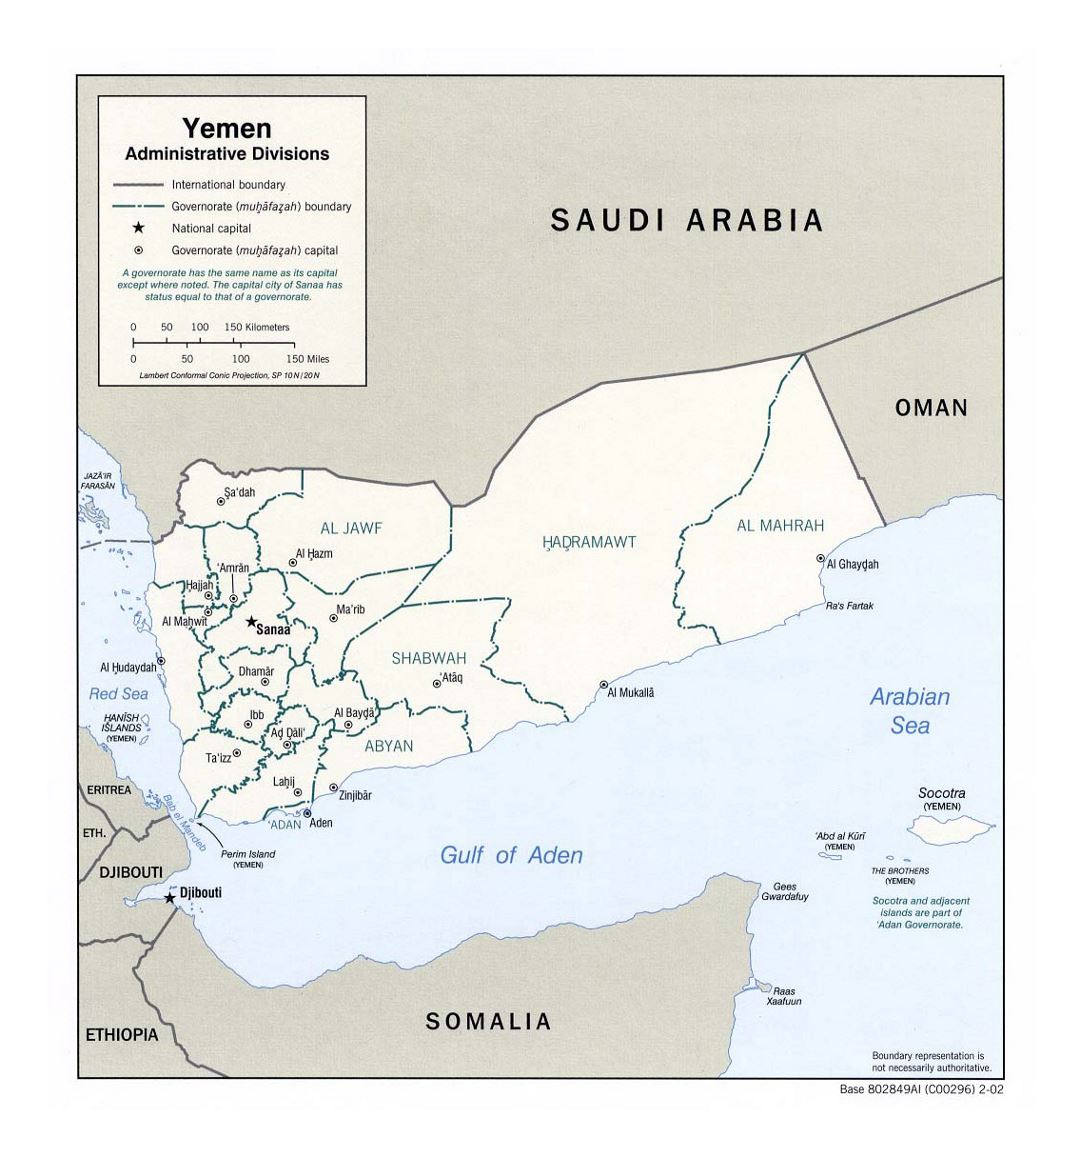 Детальная карта административных деления Йемена - 2002